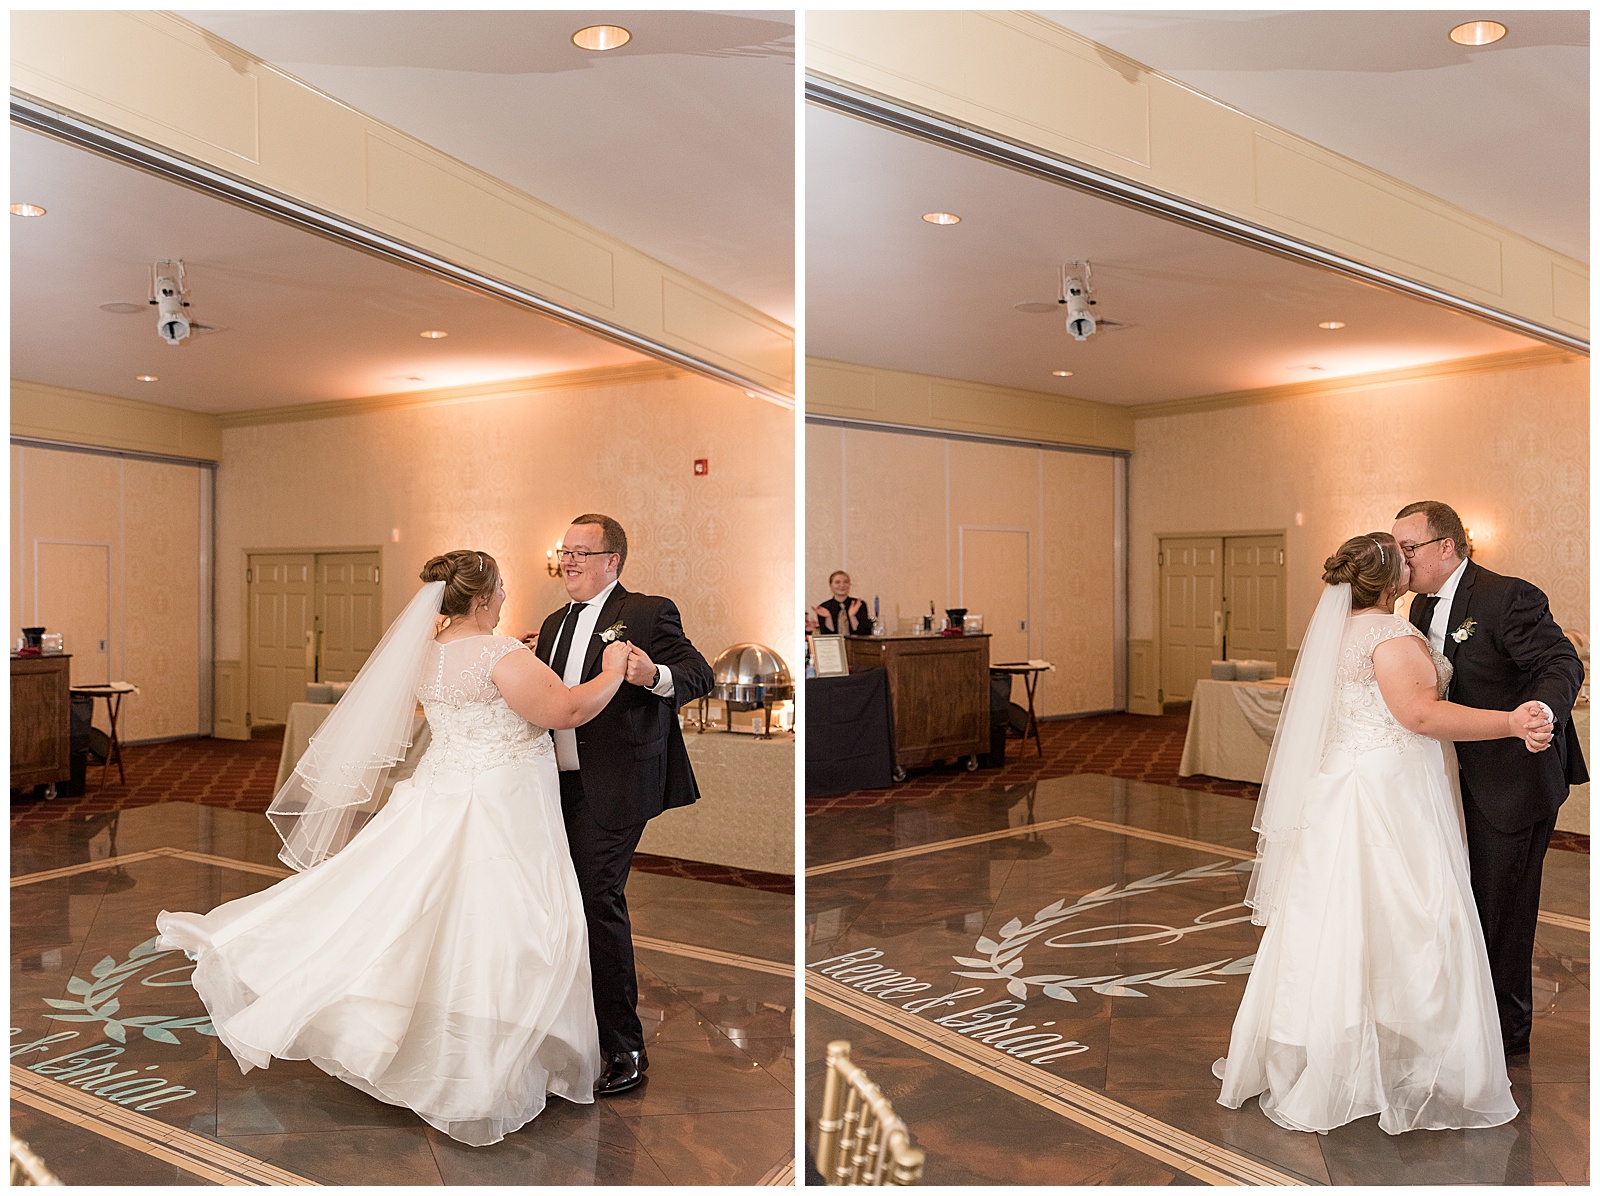 couple having fun dancing on wooden dance floor inside wedding reception